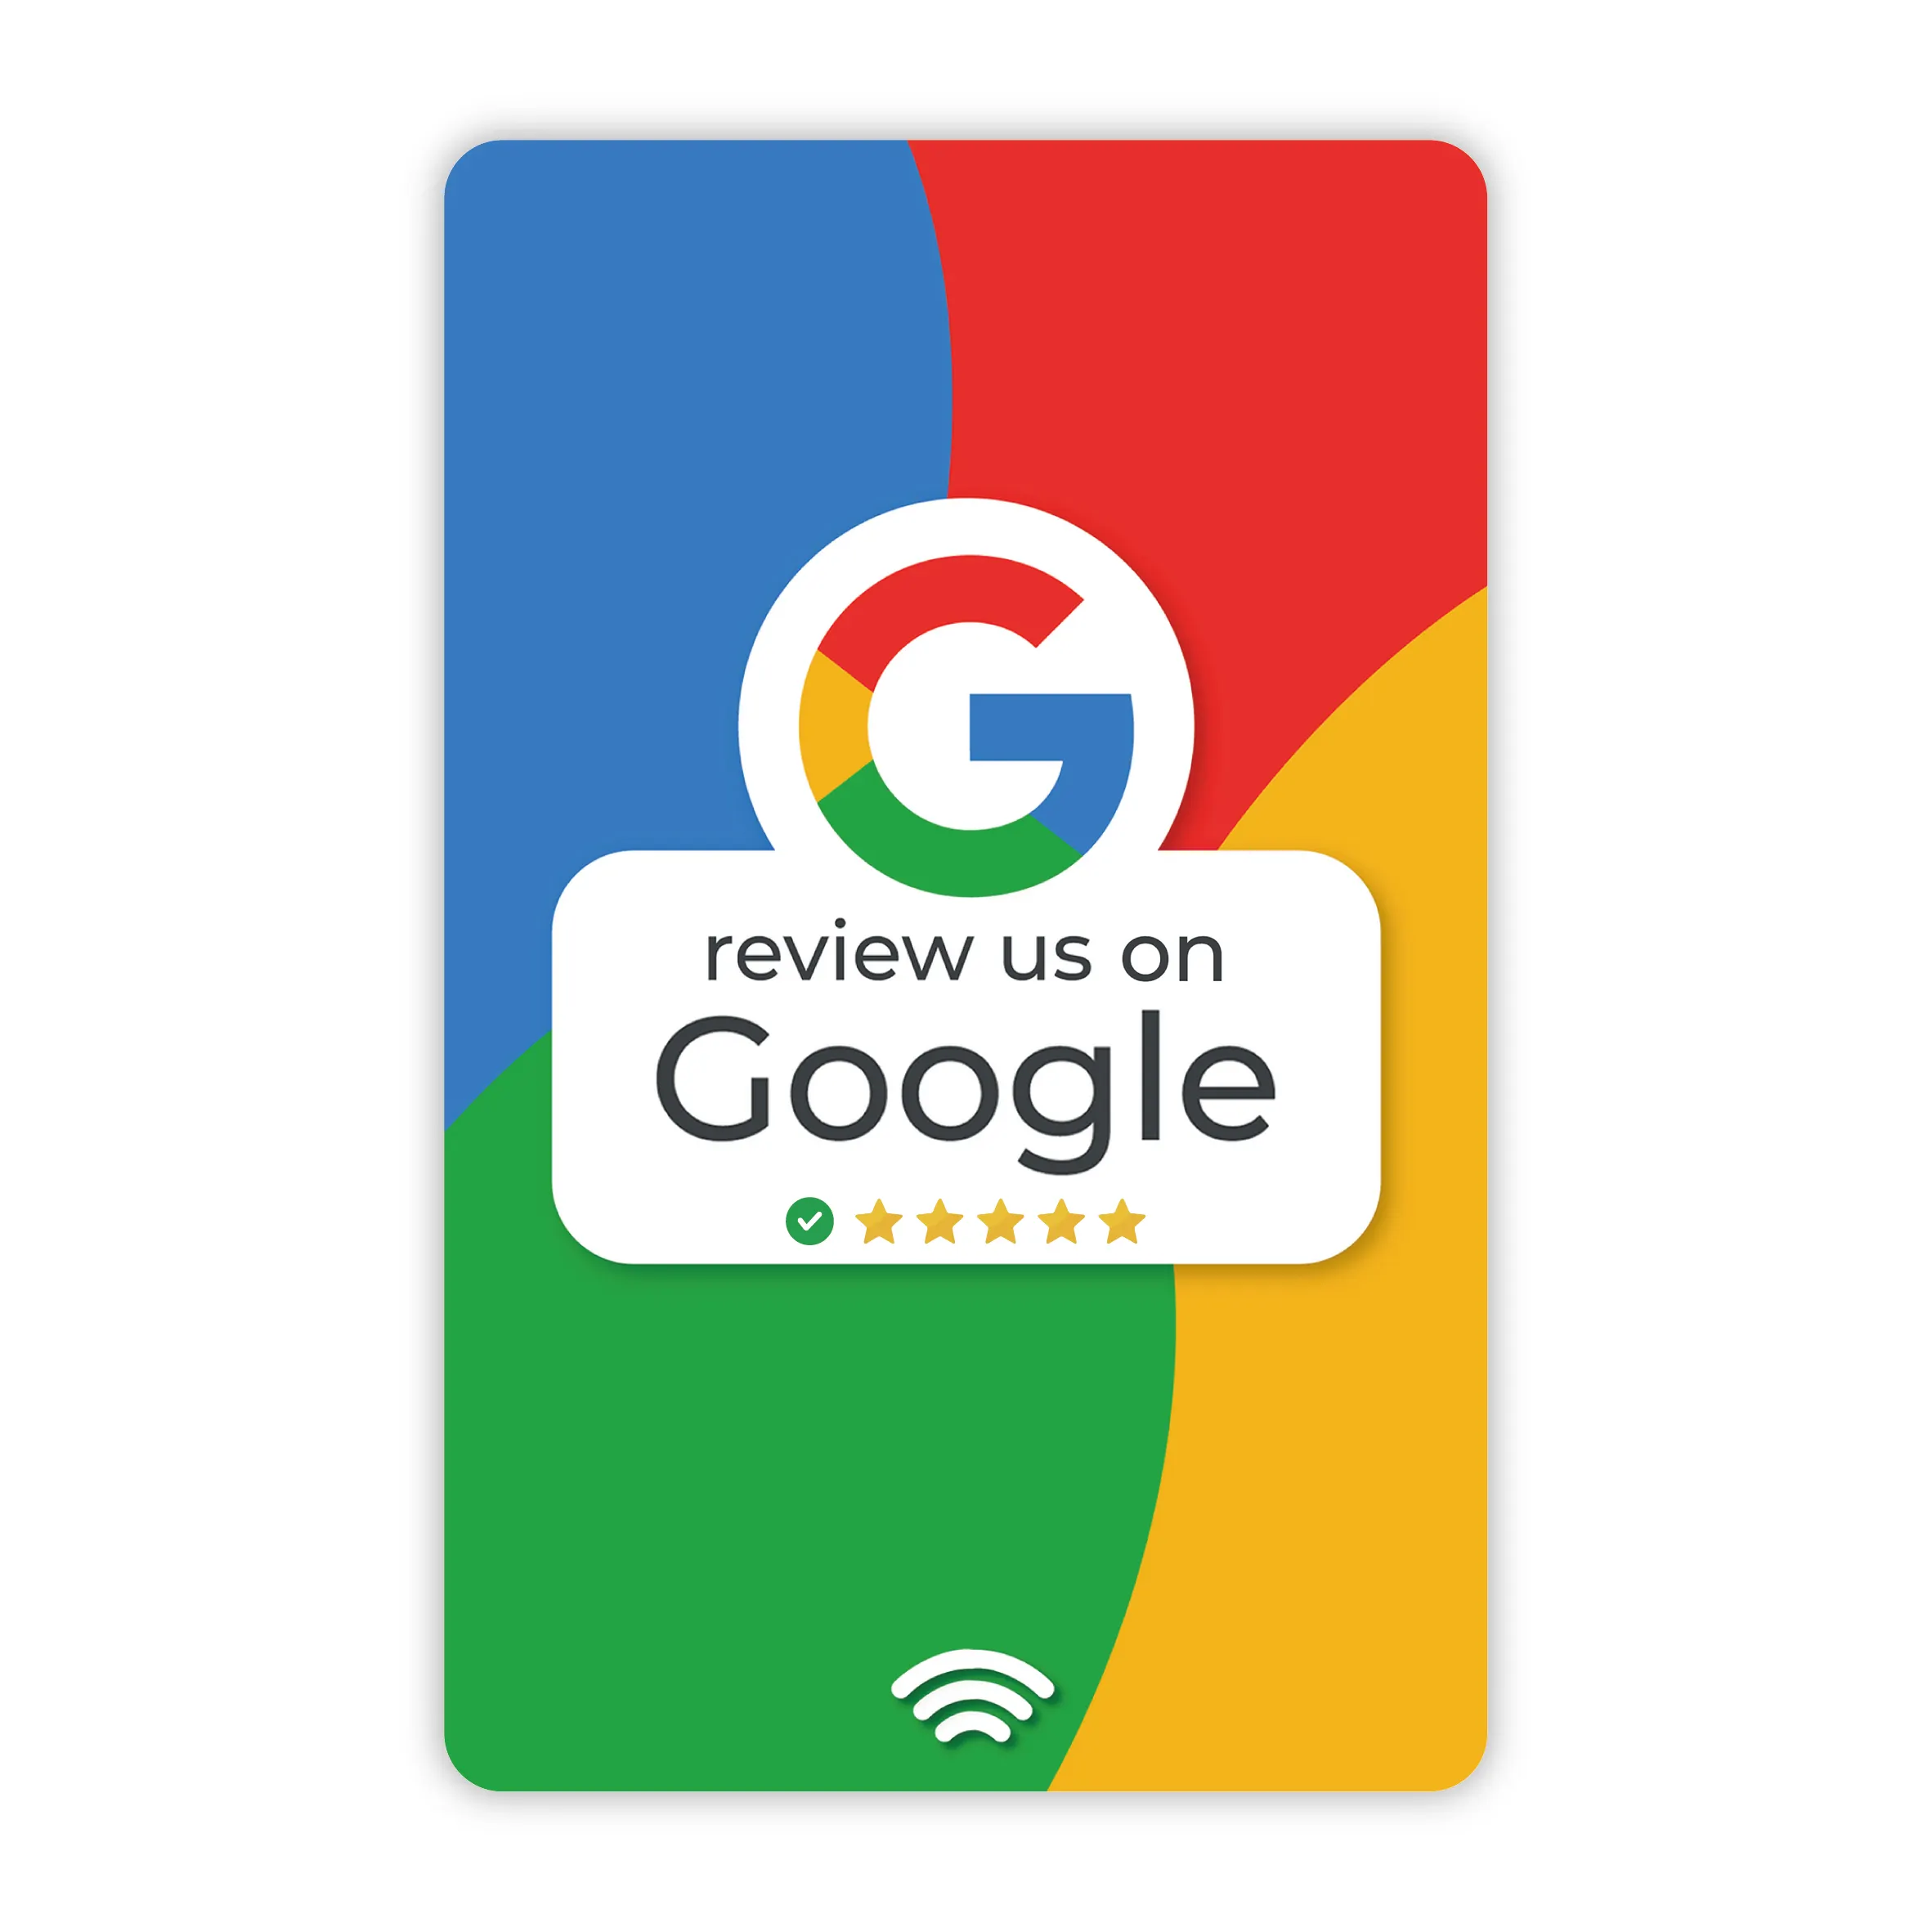 फैक्टरी सस्ते दाम गूगल रिव्यू कार्ड चिप सोशल मीडिया प्लास्टिक आरएफआईडी एनएफसी बिजनेस कार्ड